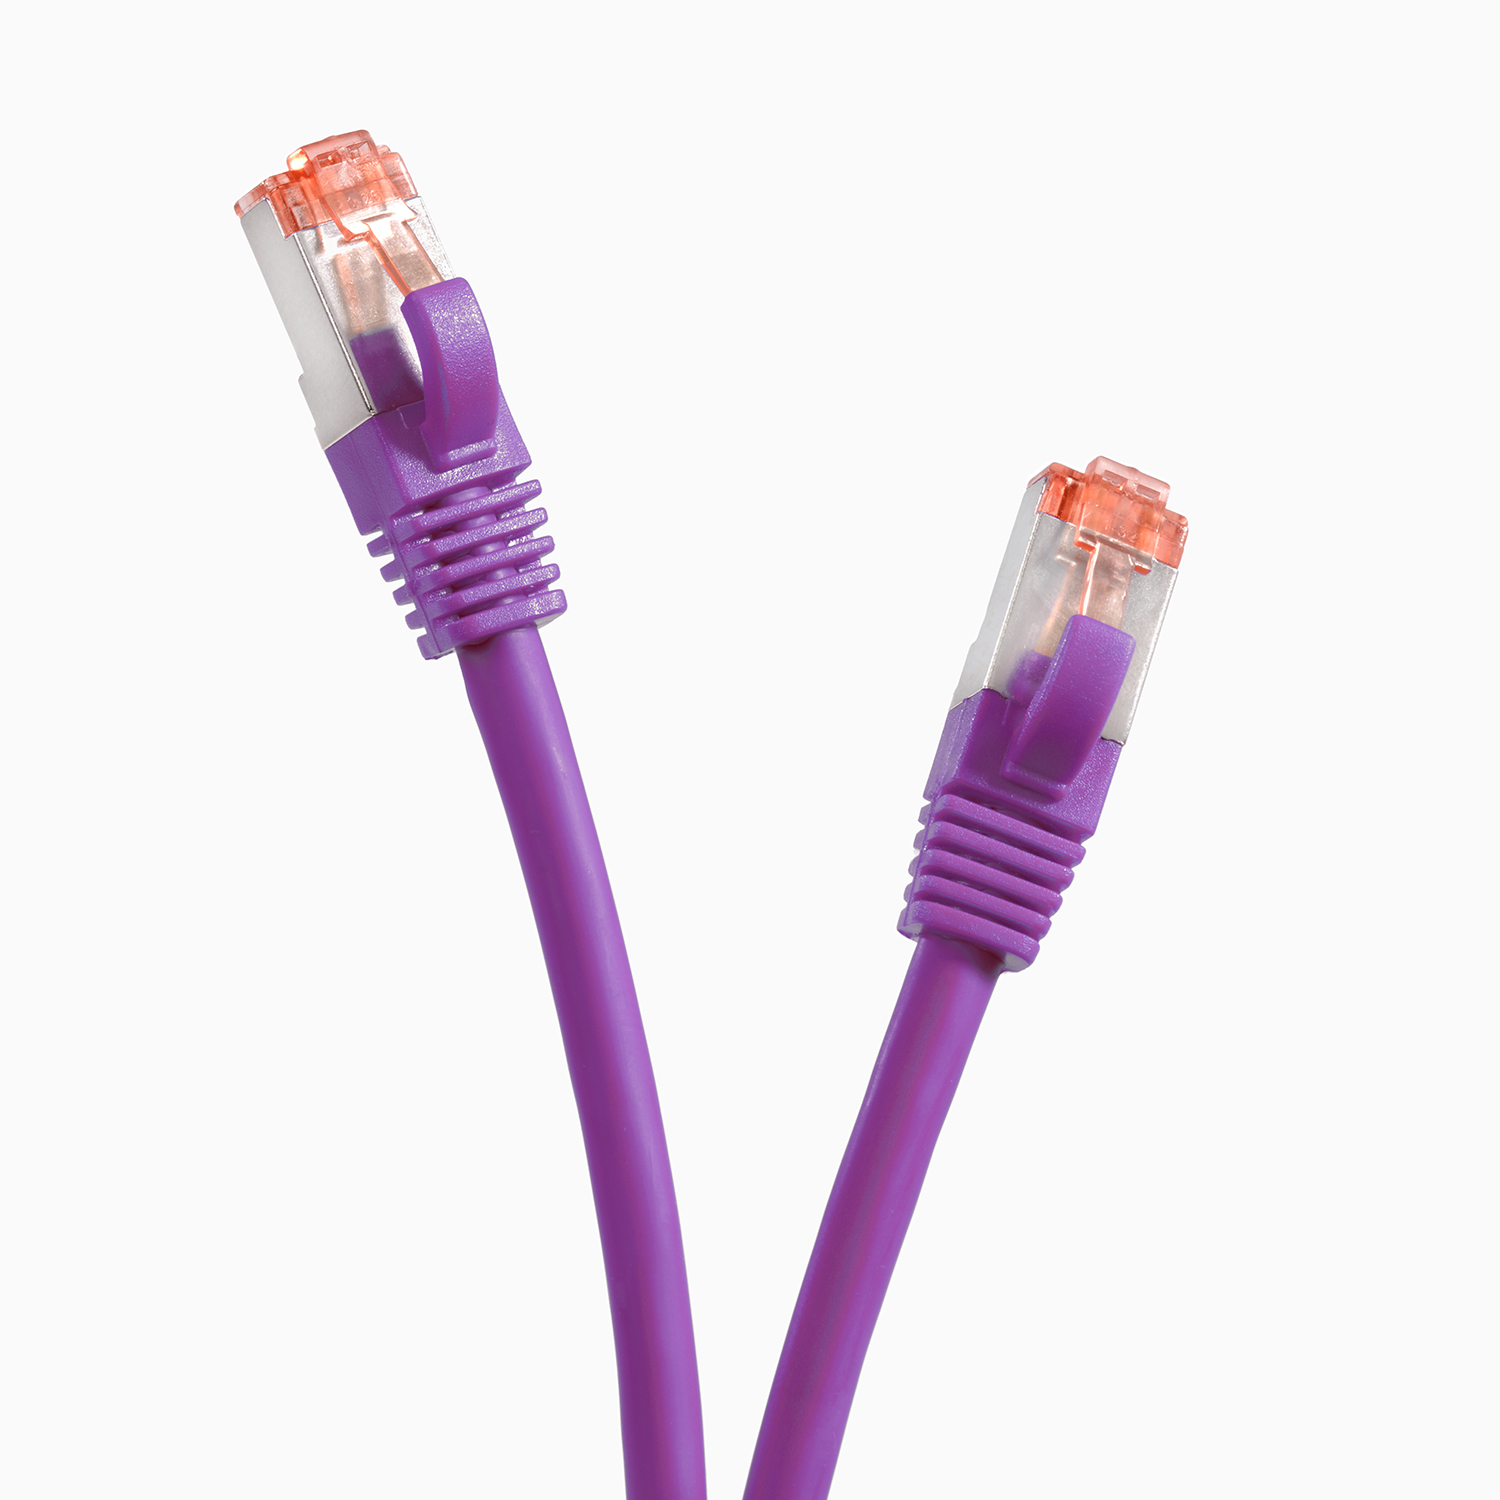 TPFNET 10er Pack 0,25m Patchkabel 0,25 S/FTP m Netzwerkkabel 1000Mbit, violett, Netzwerkkabel, 